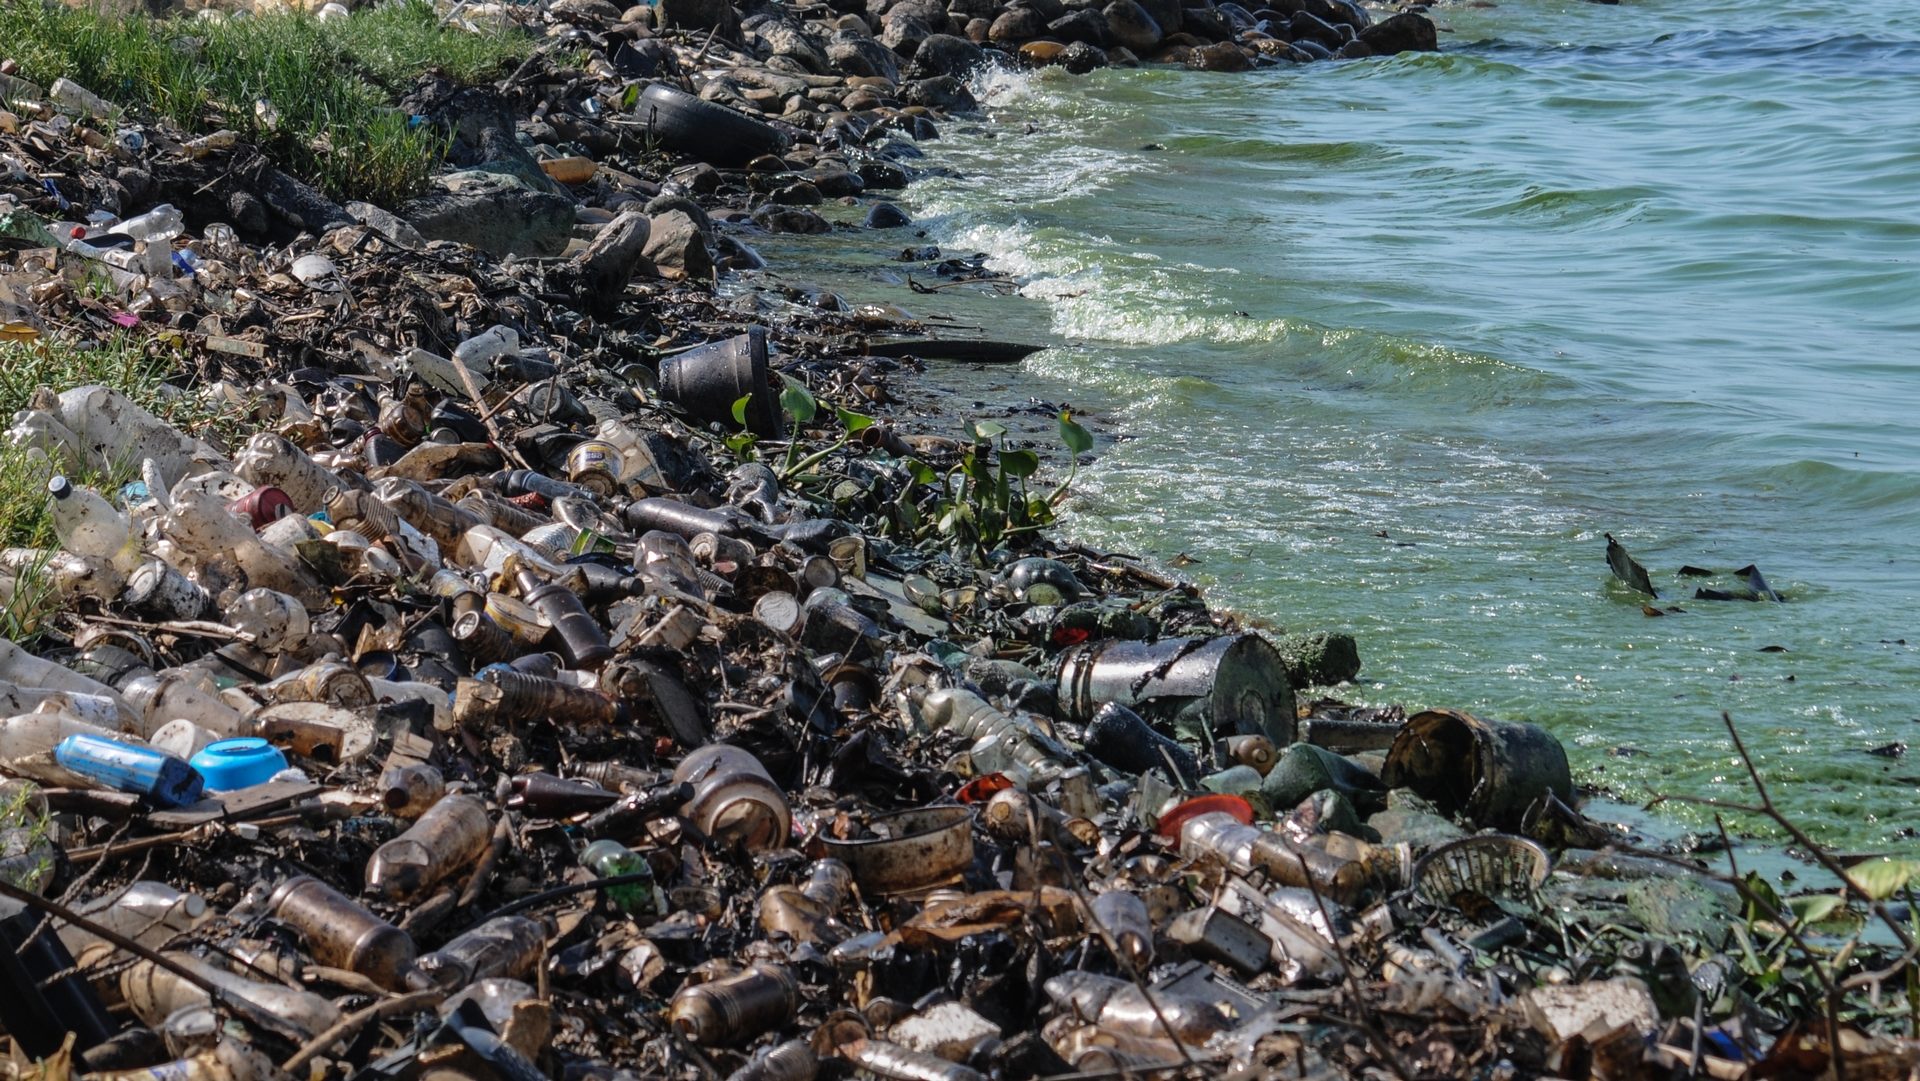 Des tonnes de déchets jonchent les eaux (photo Wikimeia commons The Photographer CC BY-SA 3.0)